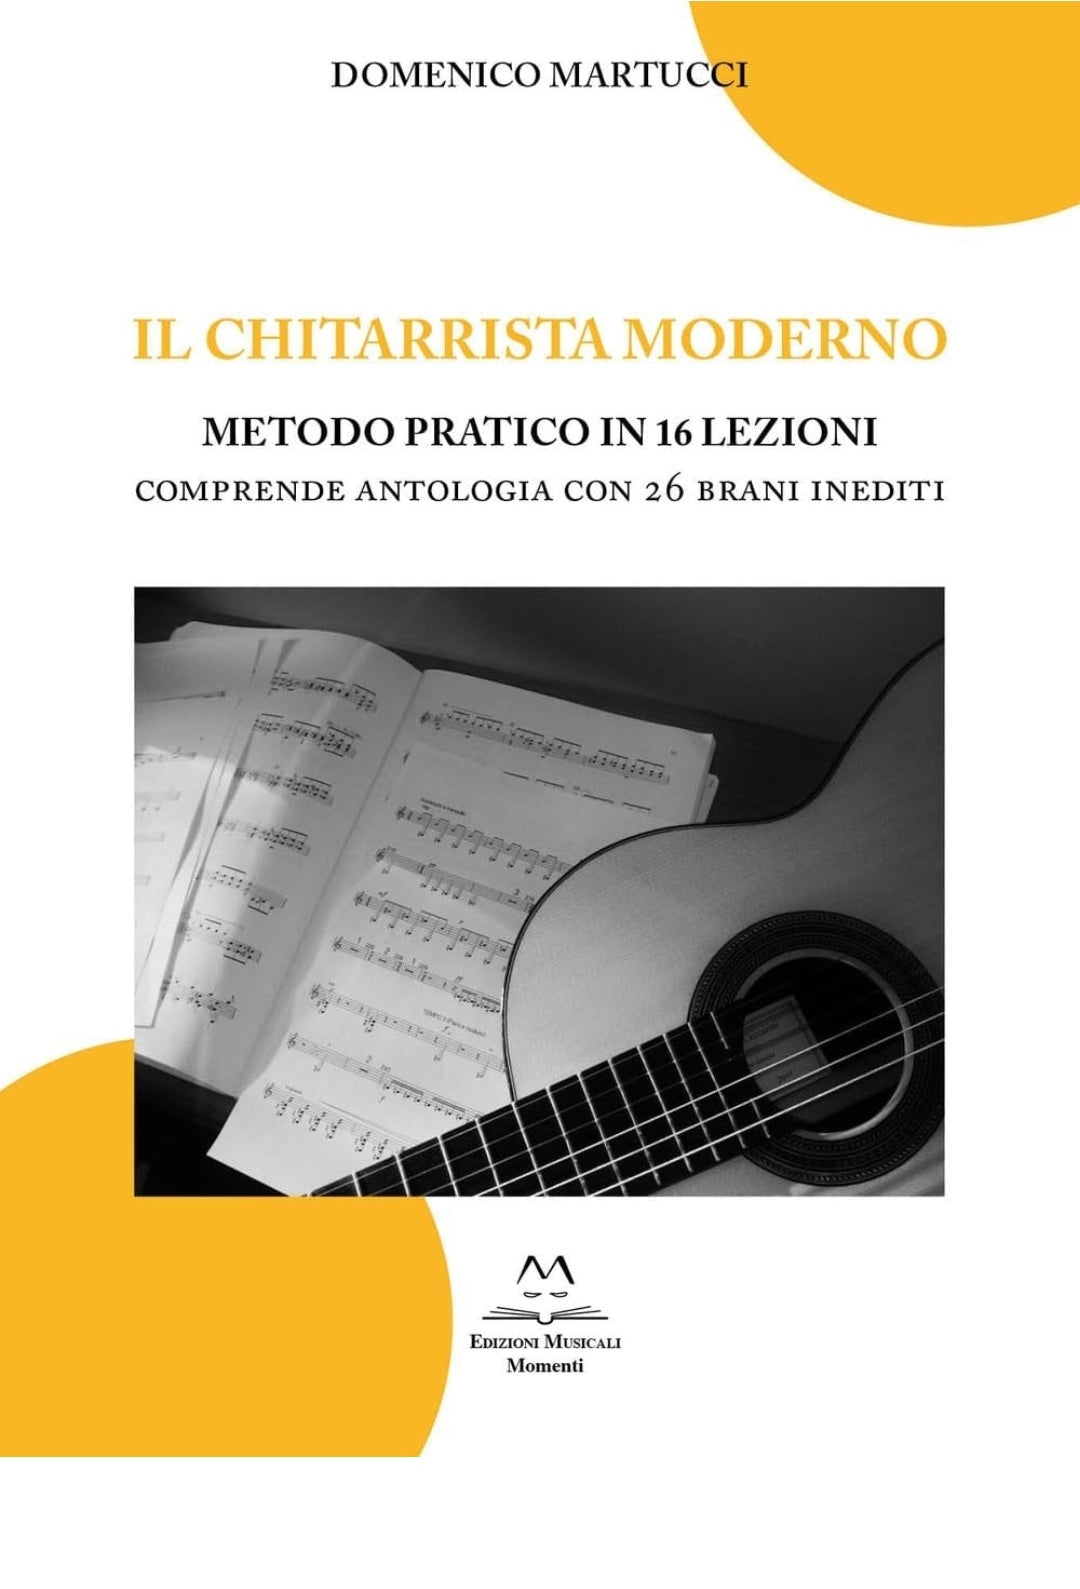 Domenico Martucci. Il chitarrista moderno. Metodo pratico in 16 lezioni. Comprende antologia con 26 brani inediti